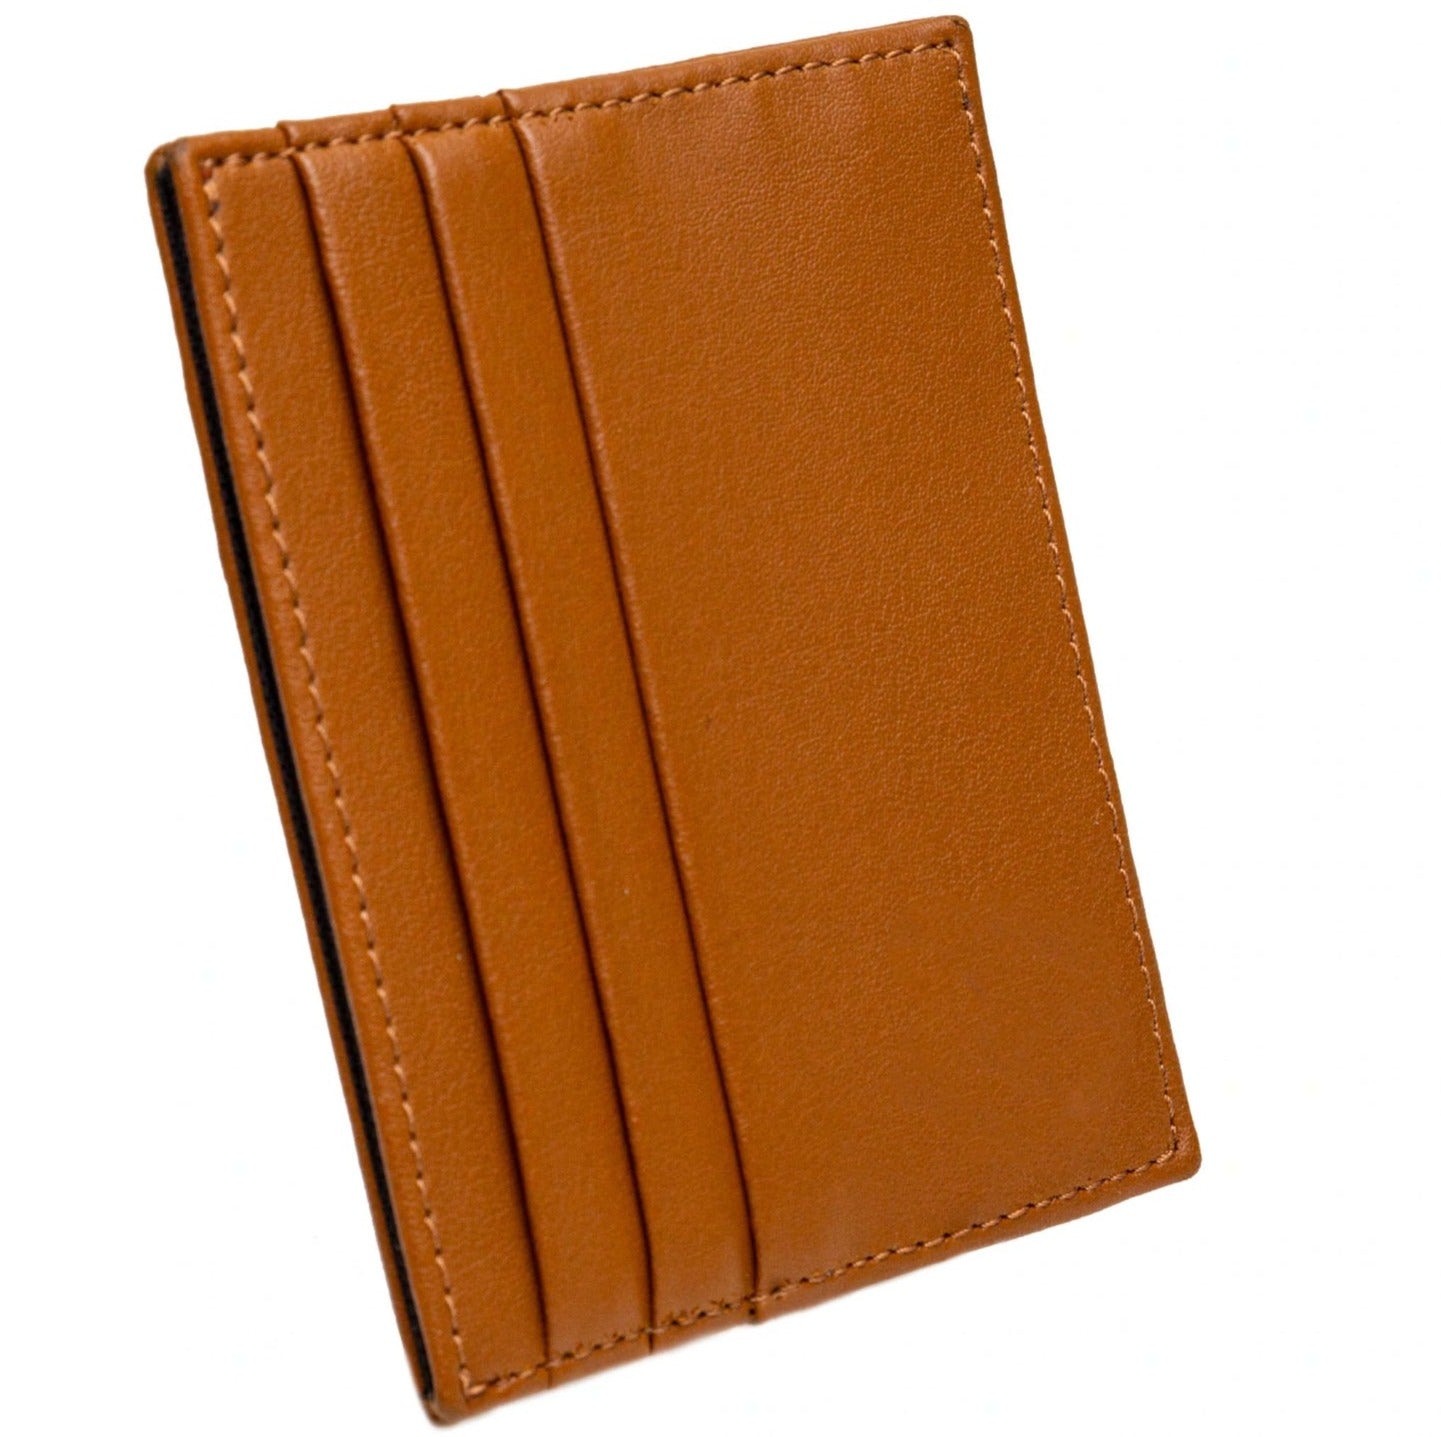 Brown Cardholder Wallet